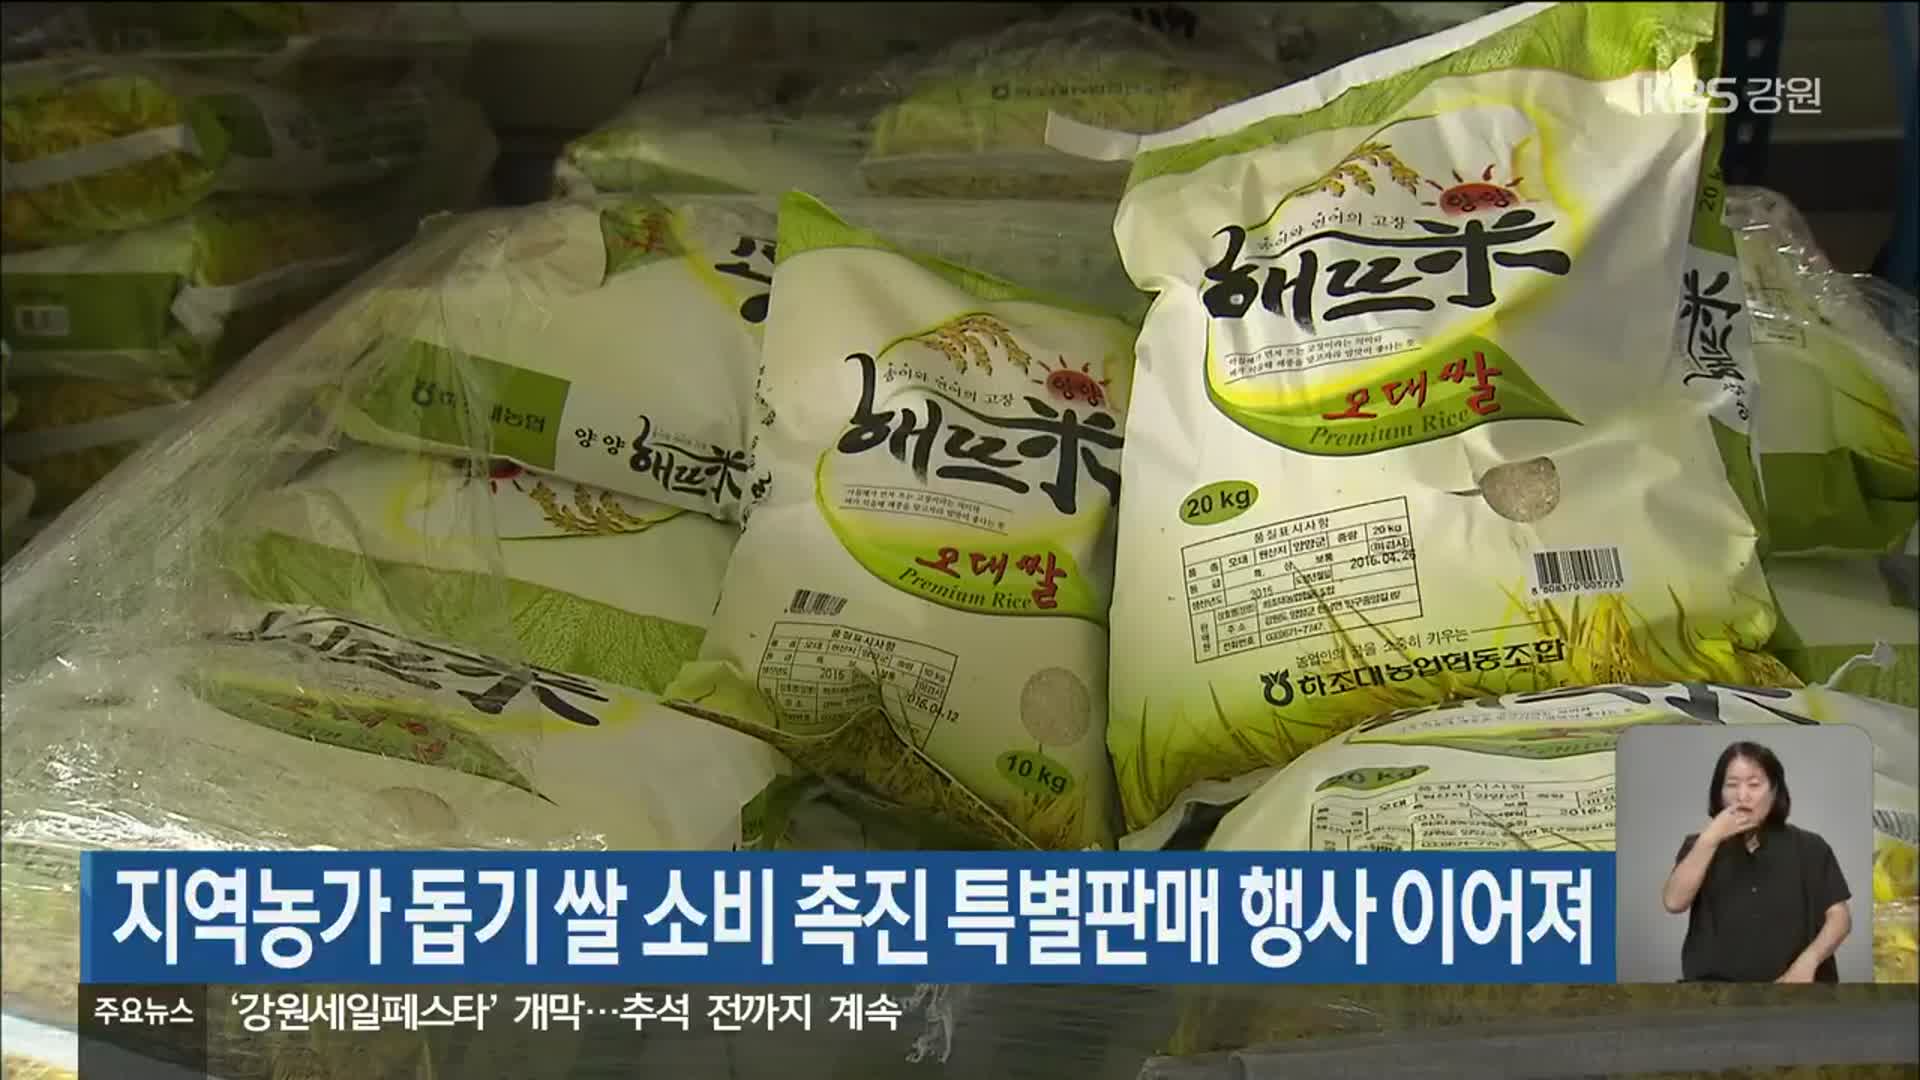 지역농가 돕기 쌀 소비 촉진 특별판매 행사 이어져